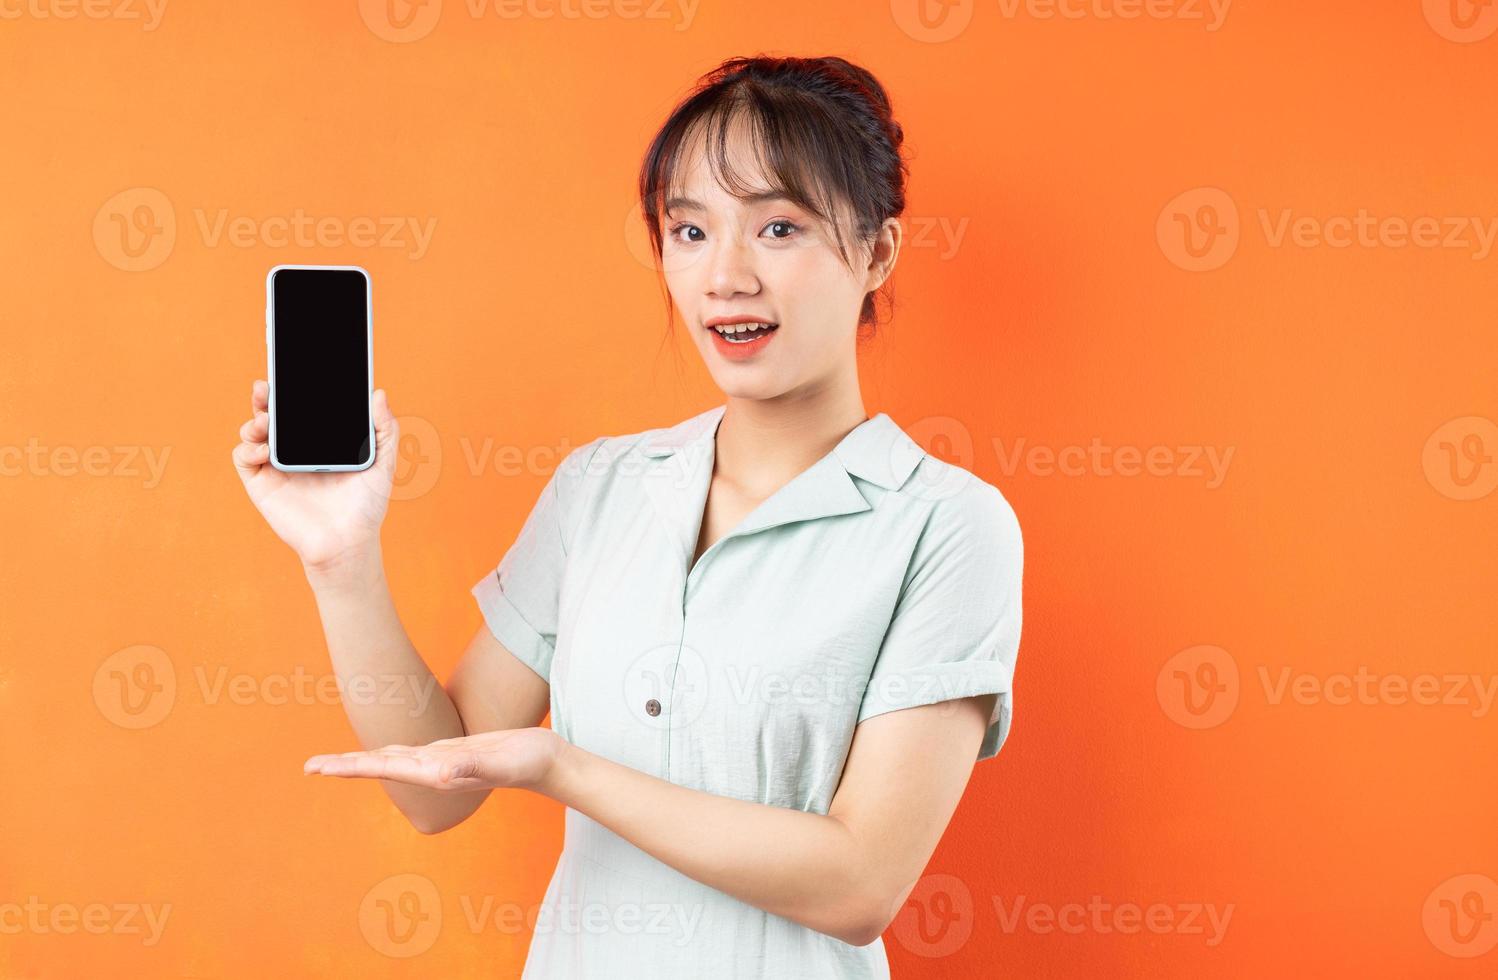 portret van een jong meisje dat het telefoonscherm toont, geïsoleerd op een oranje achtergrond foto